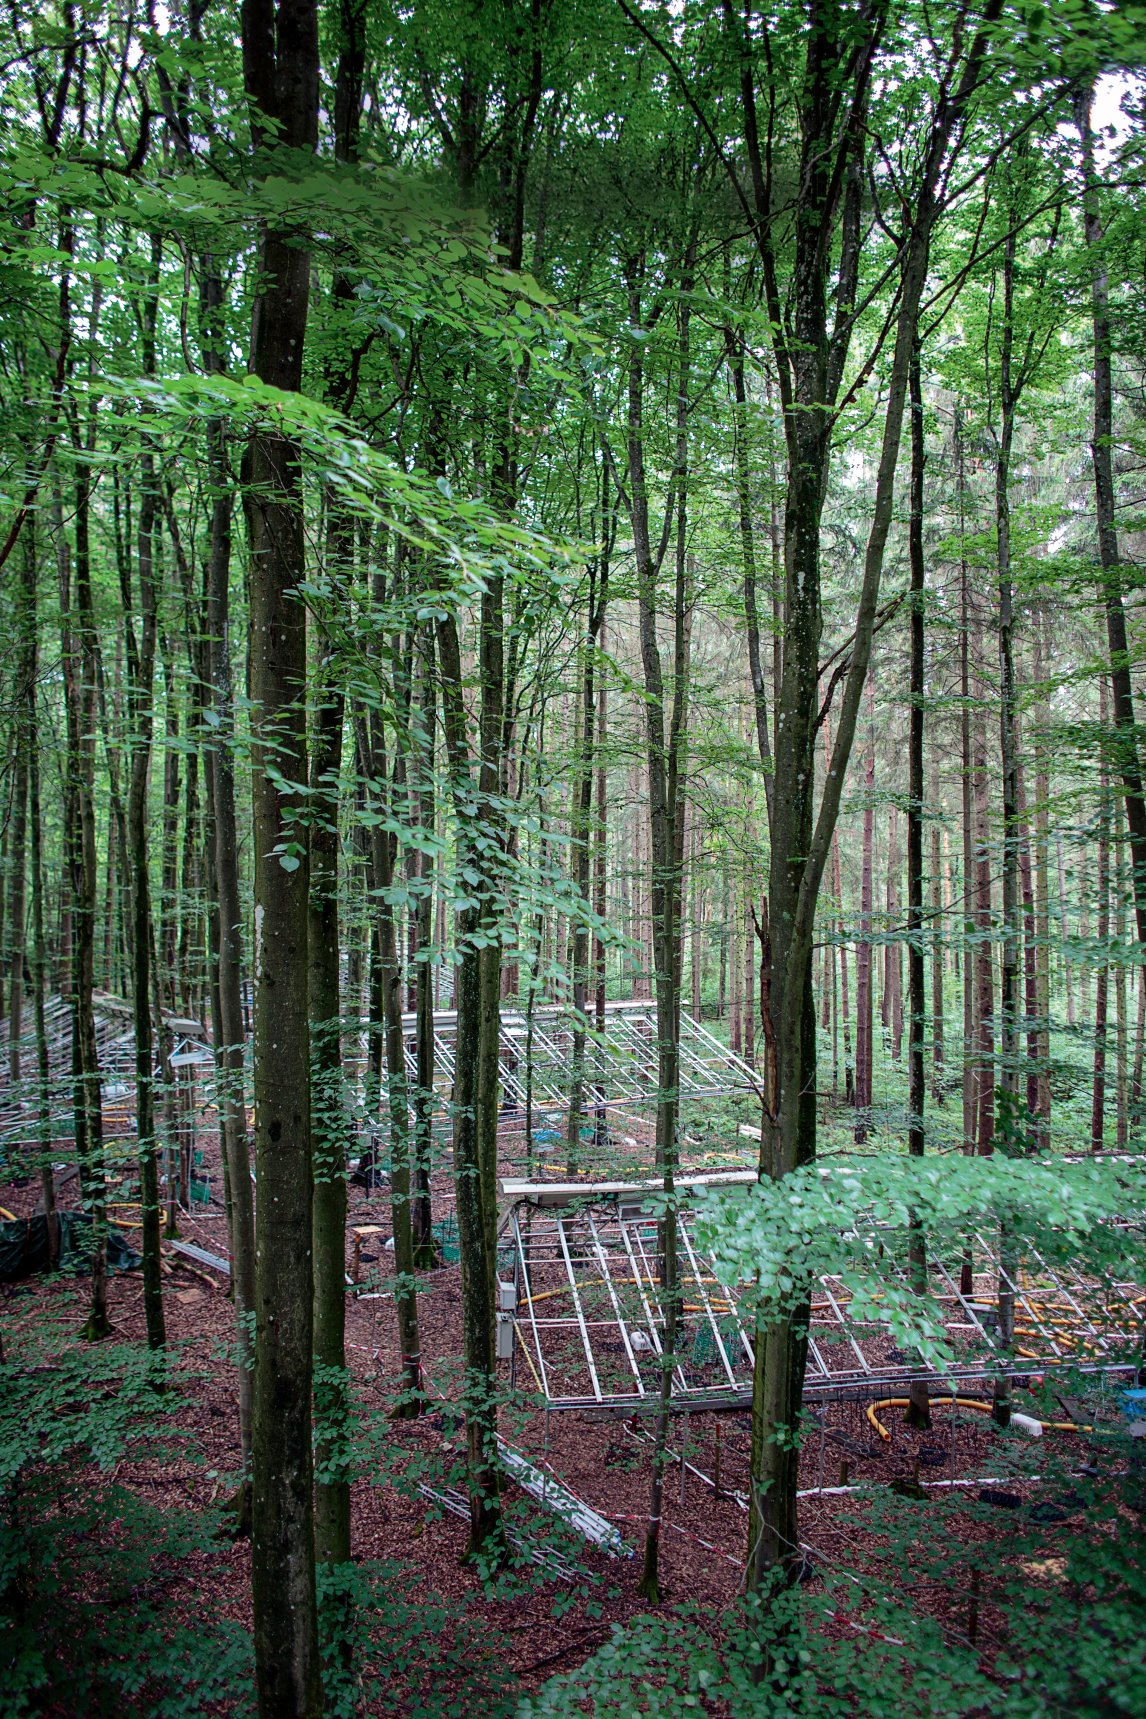 MÖBLIERTER MISCHWALD
Fünf Jahre lang haben raffinierte Dachkonstruktionen im Kranzberger Forst den Regen vom Waldboden ferngehalten. Das diente der wissenschaftlichen Erkenntnis. Nun dürfen sich die Bäume erstmal wieder erholen
